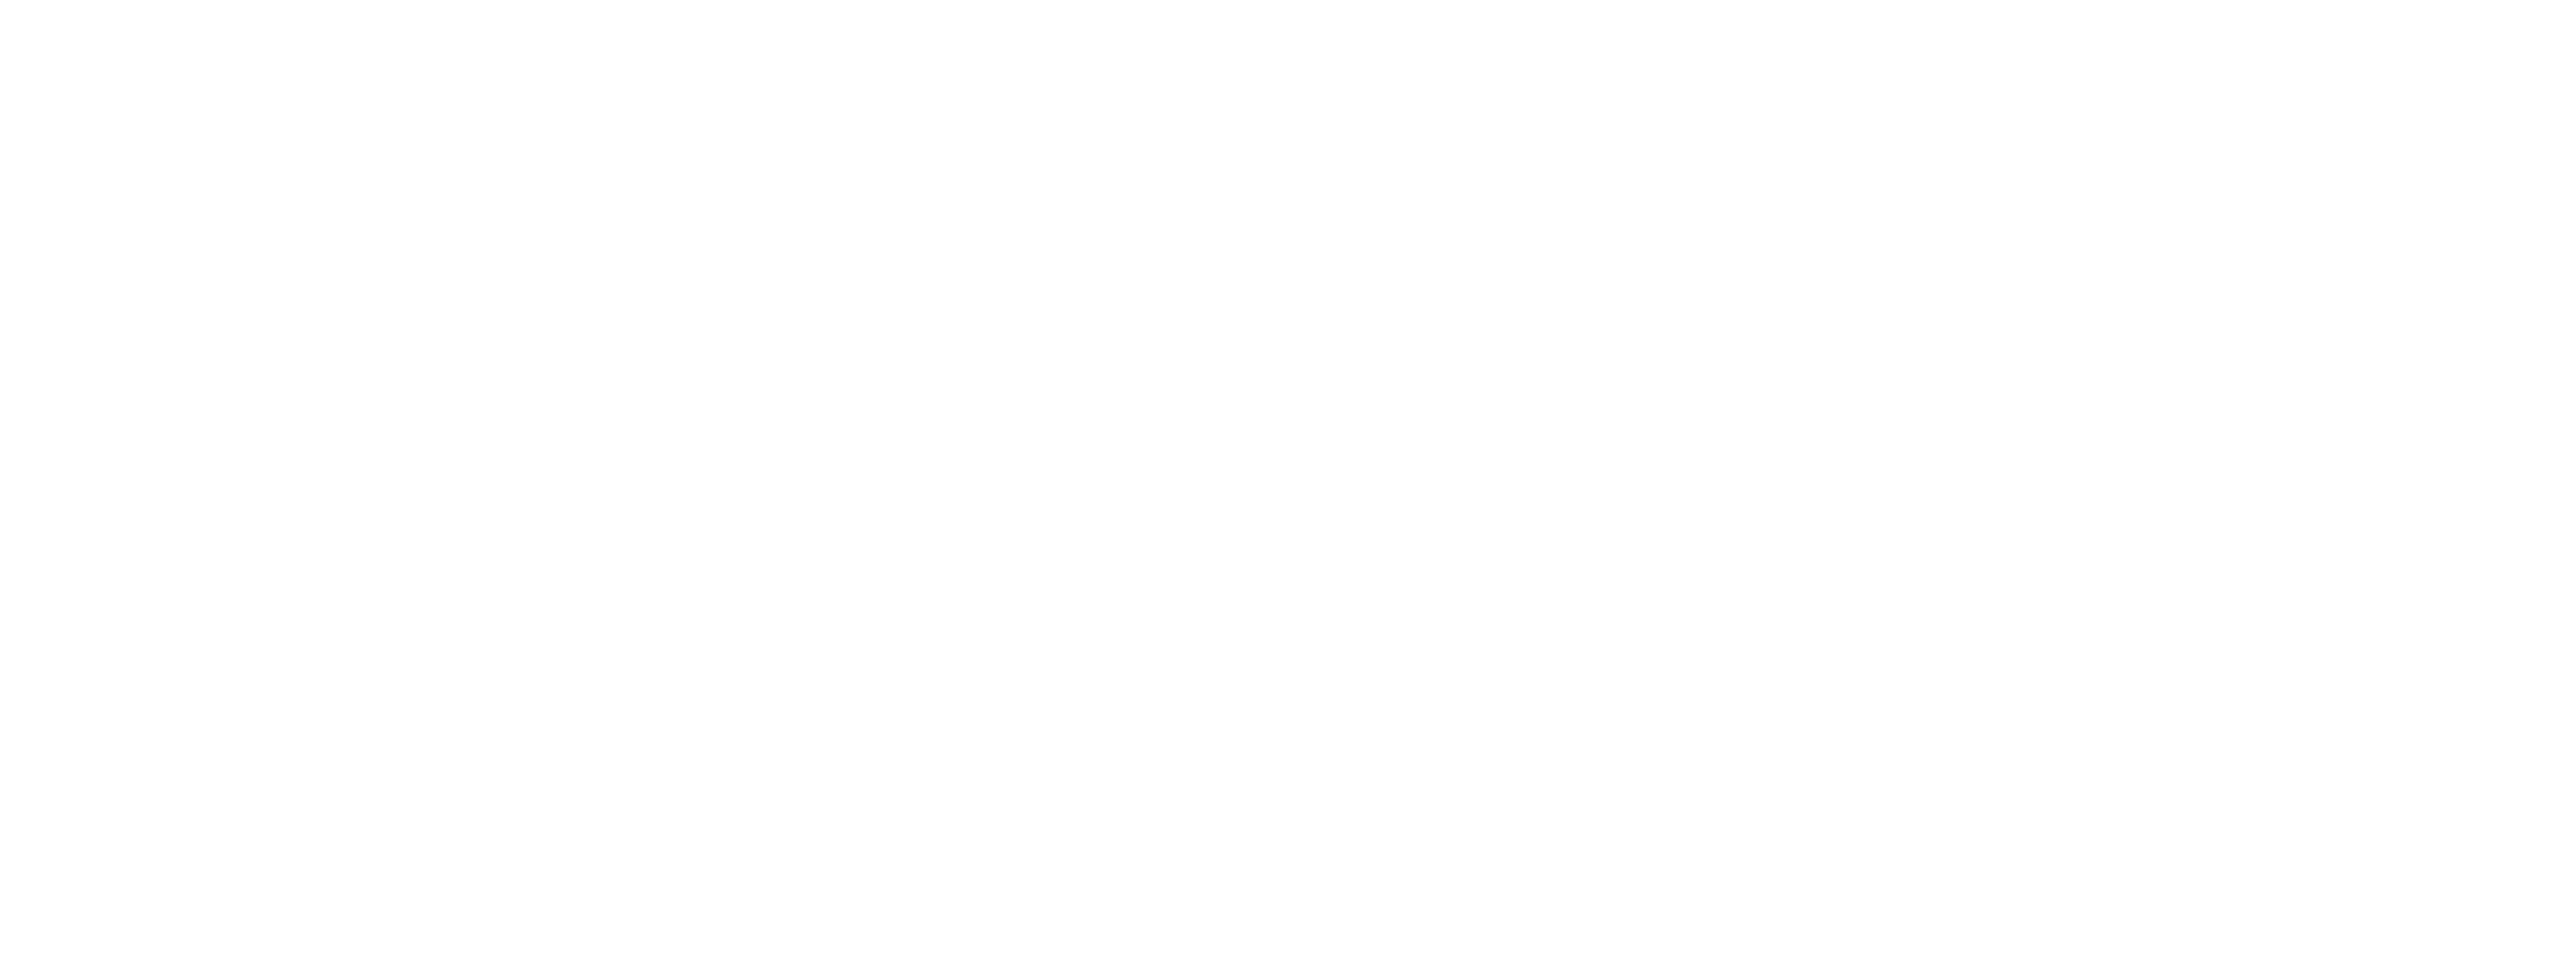 Agropecuaria Monzón